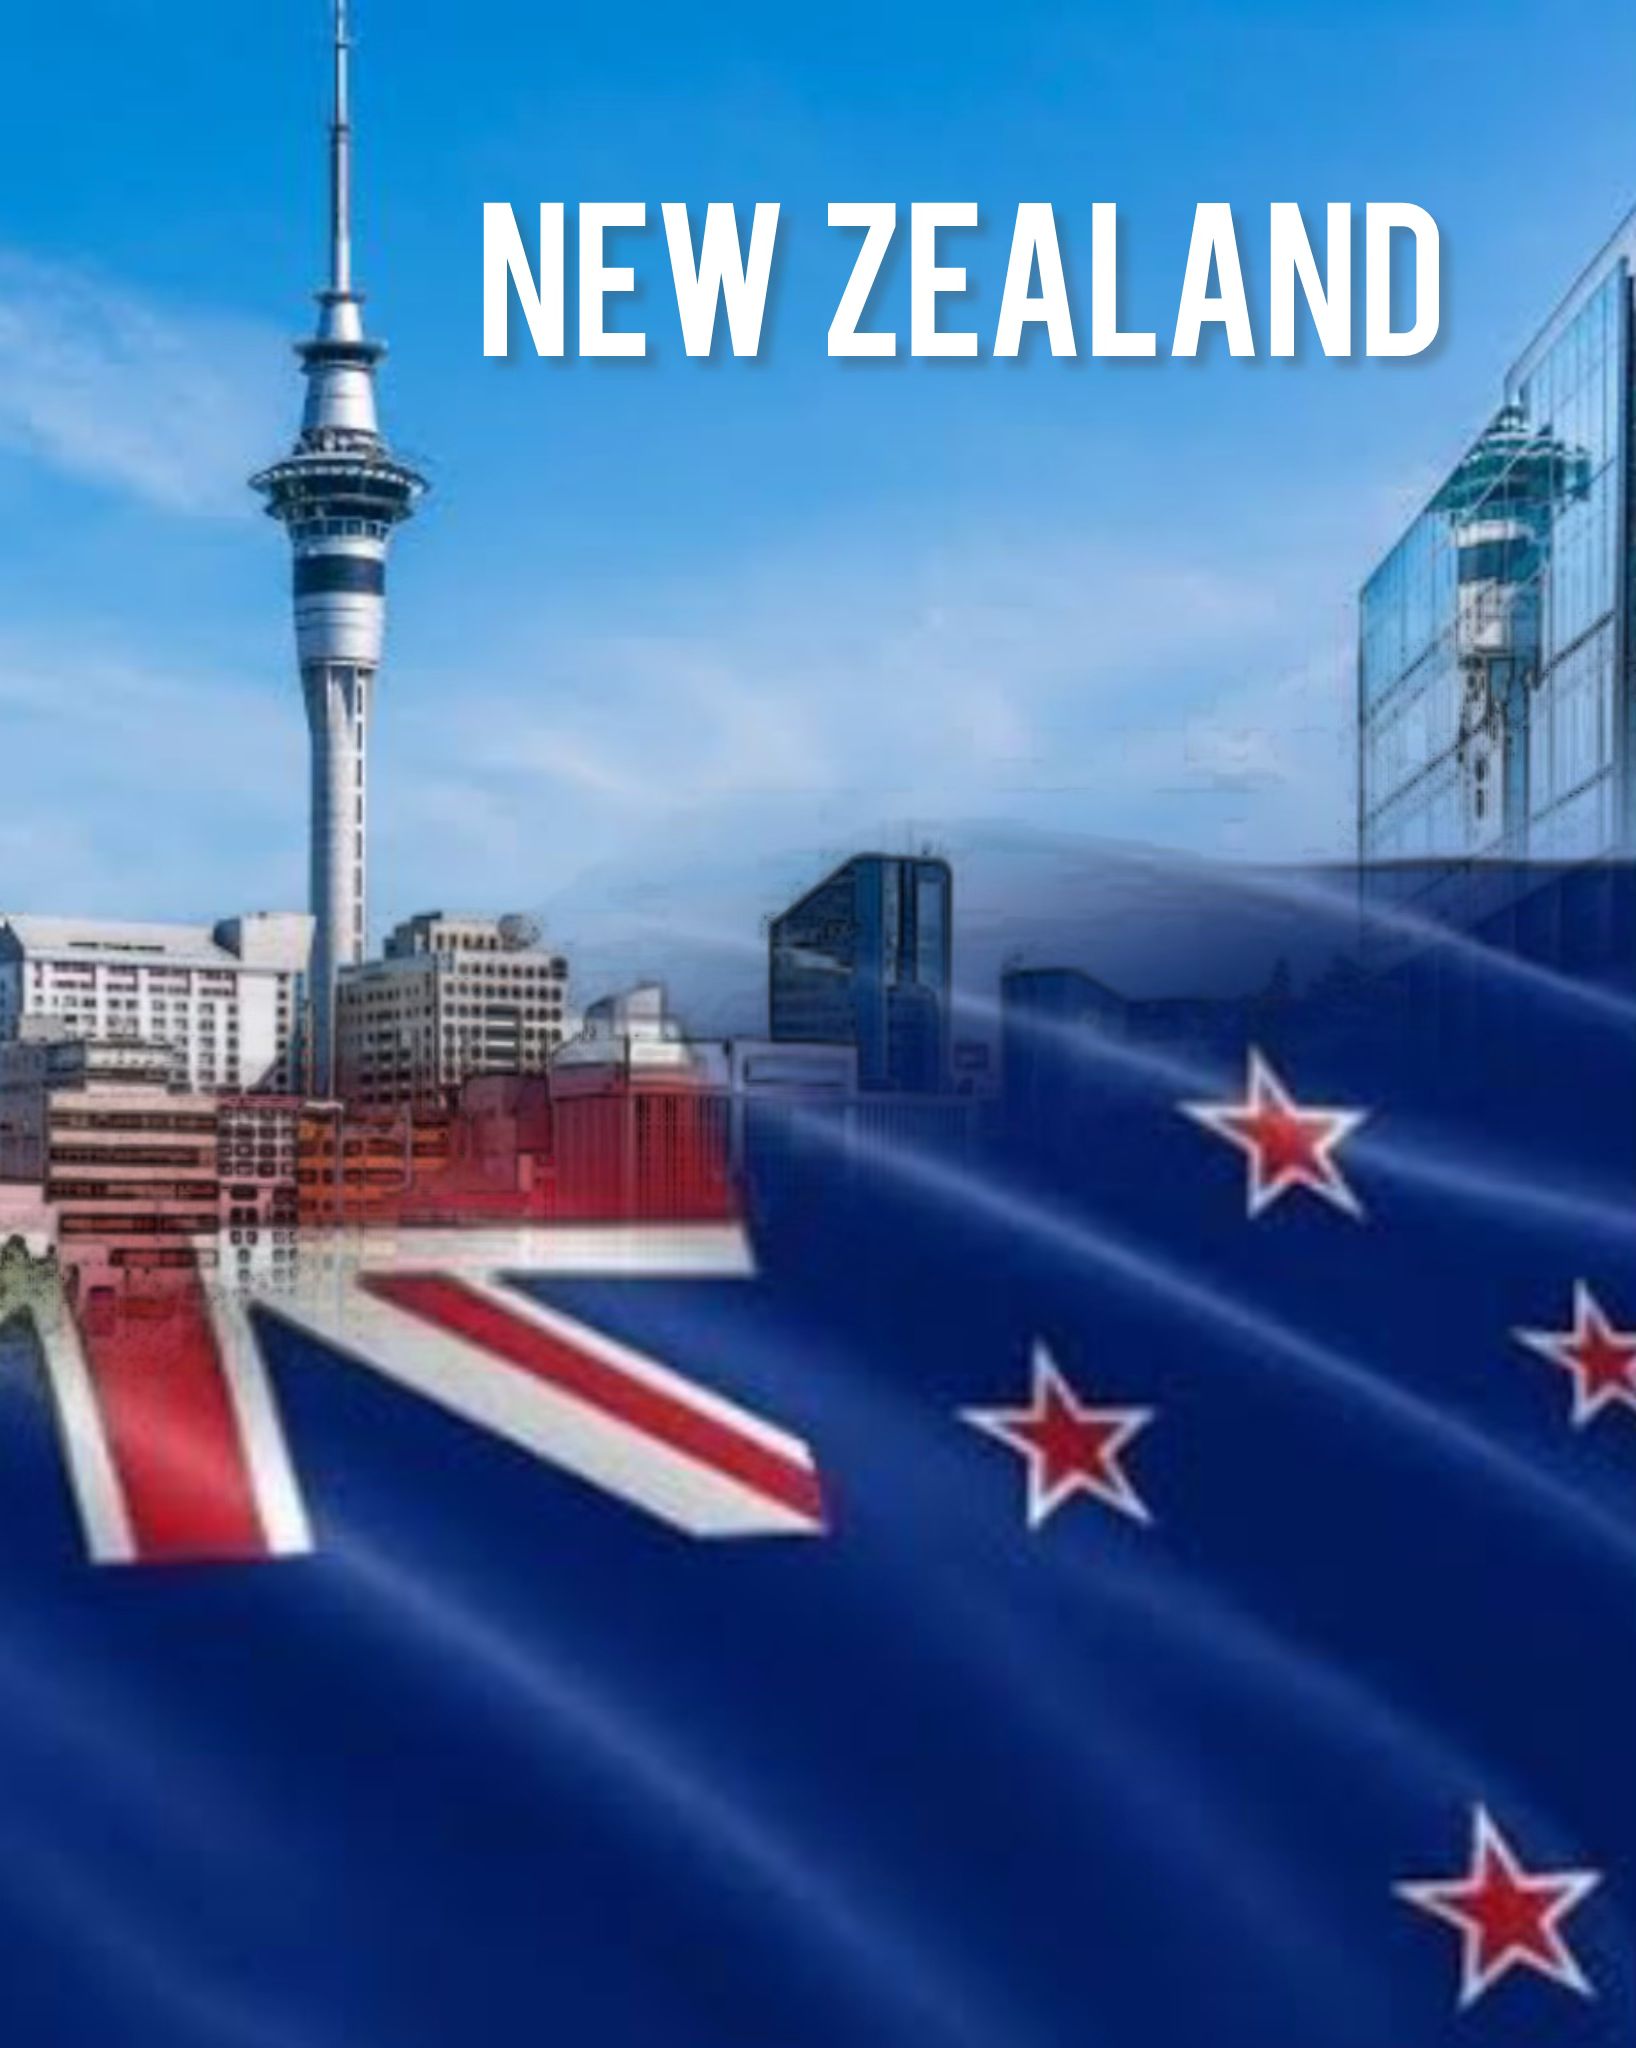 New Zealand image 92